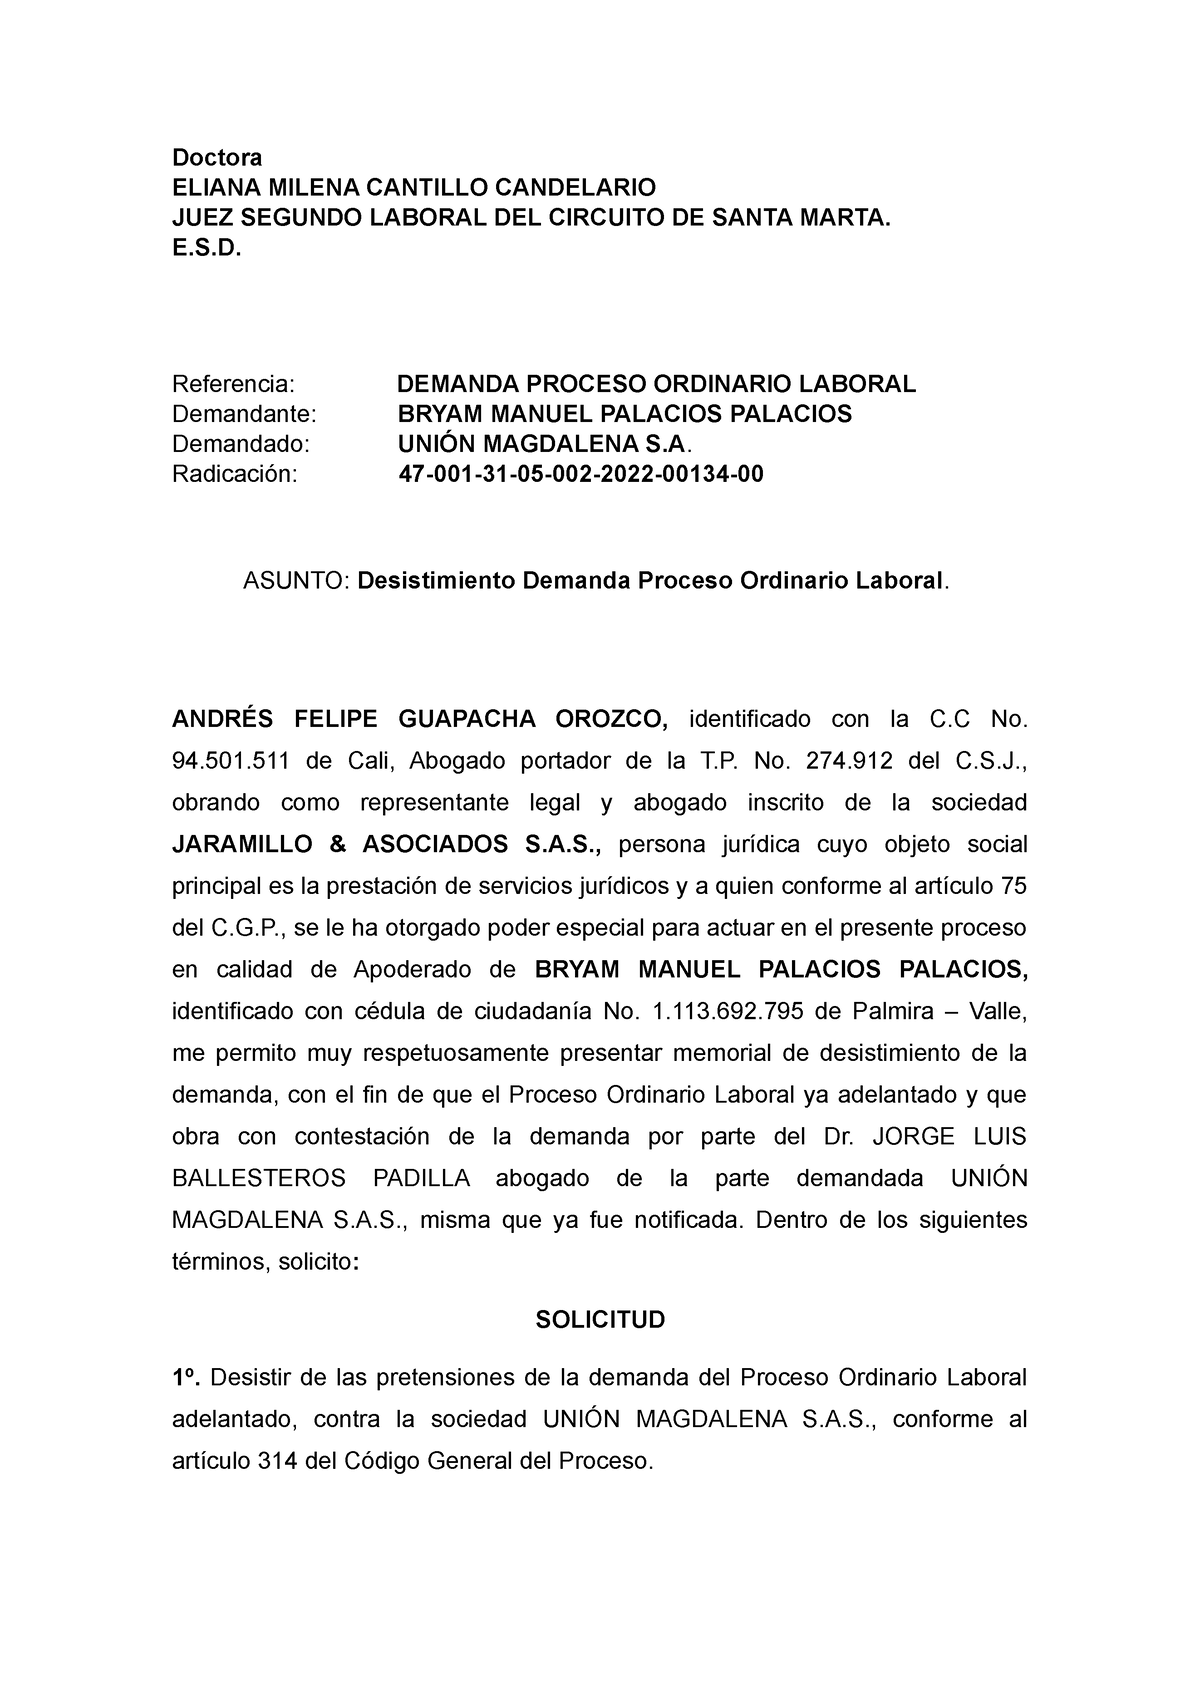 Desistimiento Demanda Ordinaria Laboral - Doctora ELIANA MILENA CANTILLO  CANDELARIO JUEZ SEGUNDO - Studocu